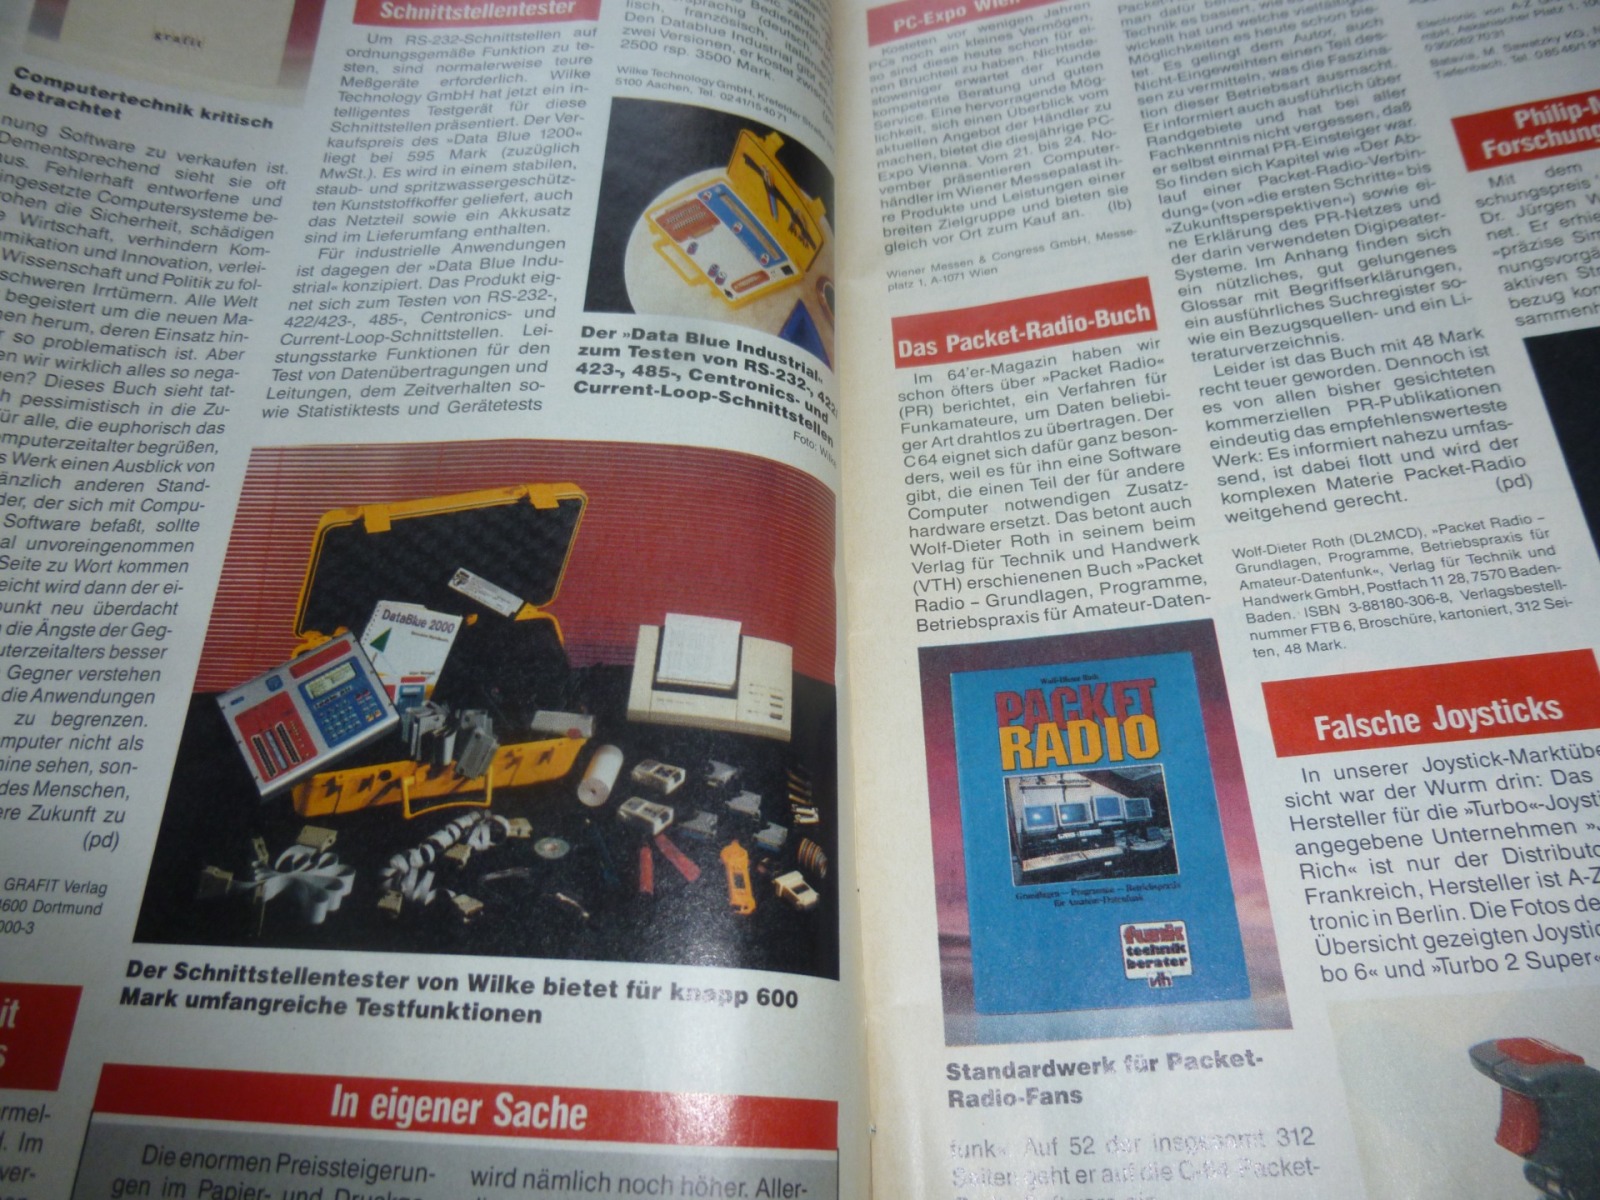 64er Magazin - Ausgabe 12/91 1991 3